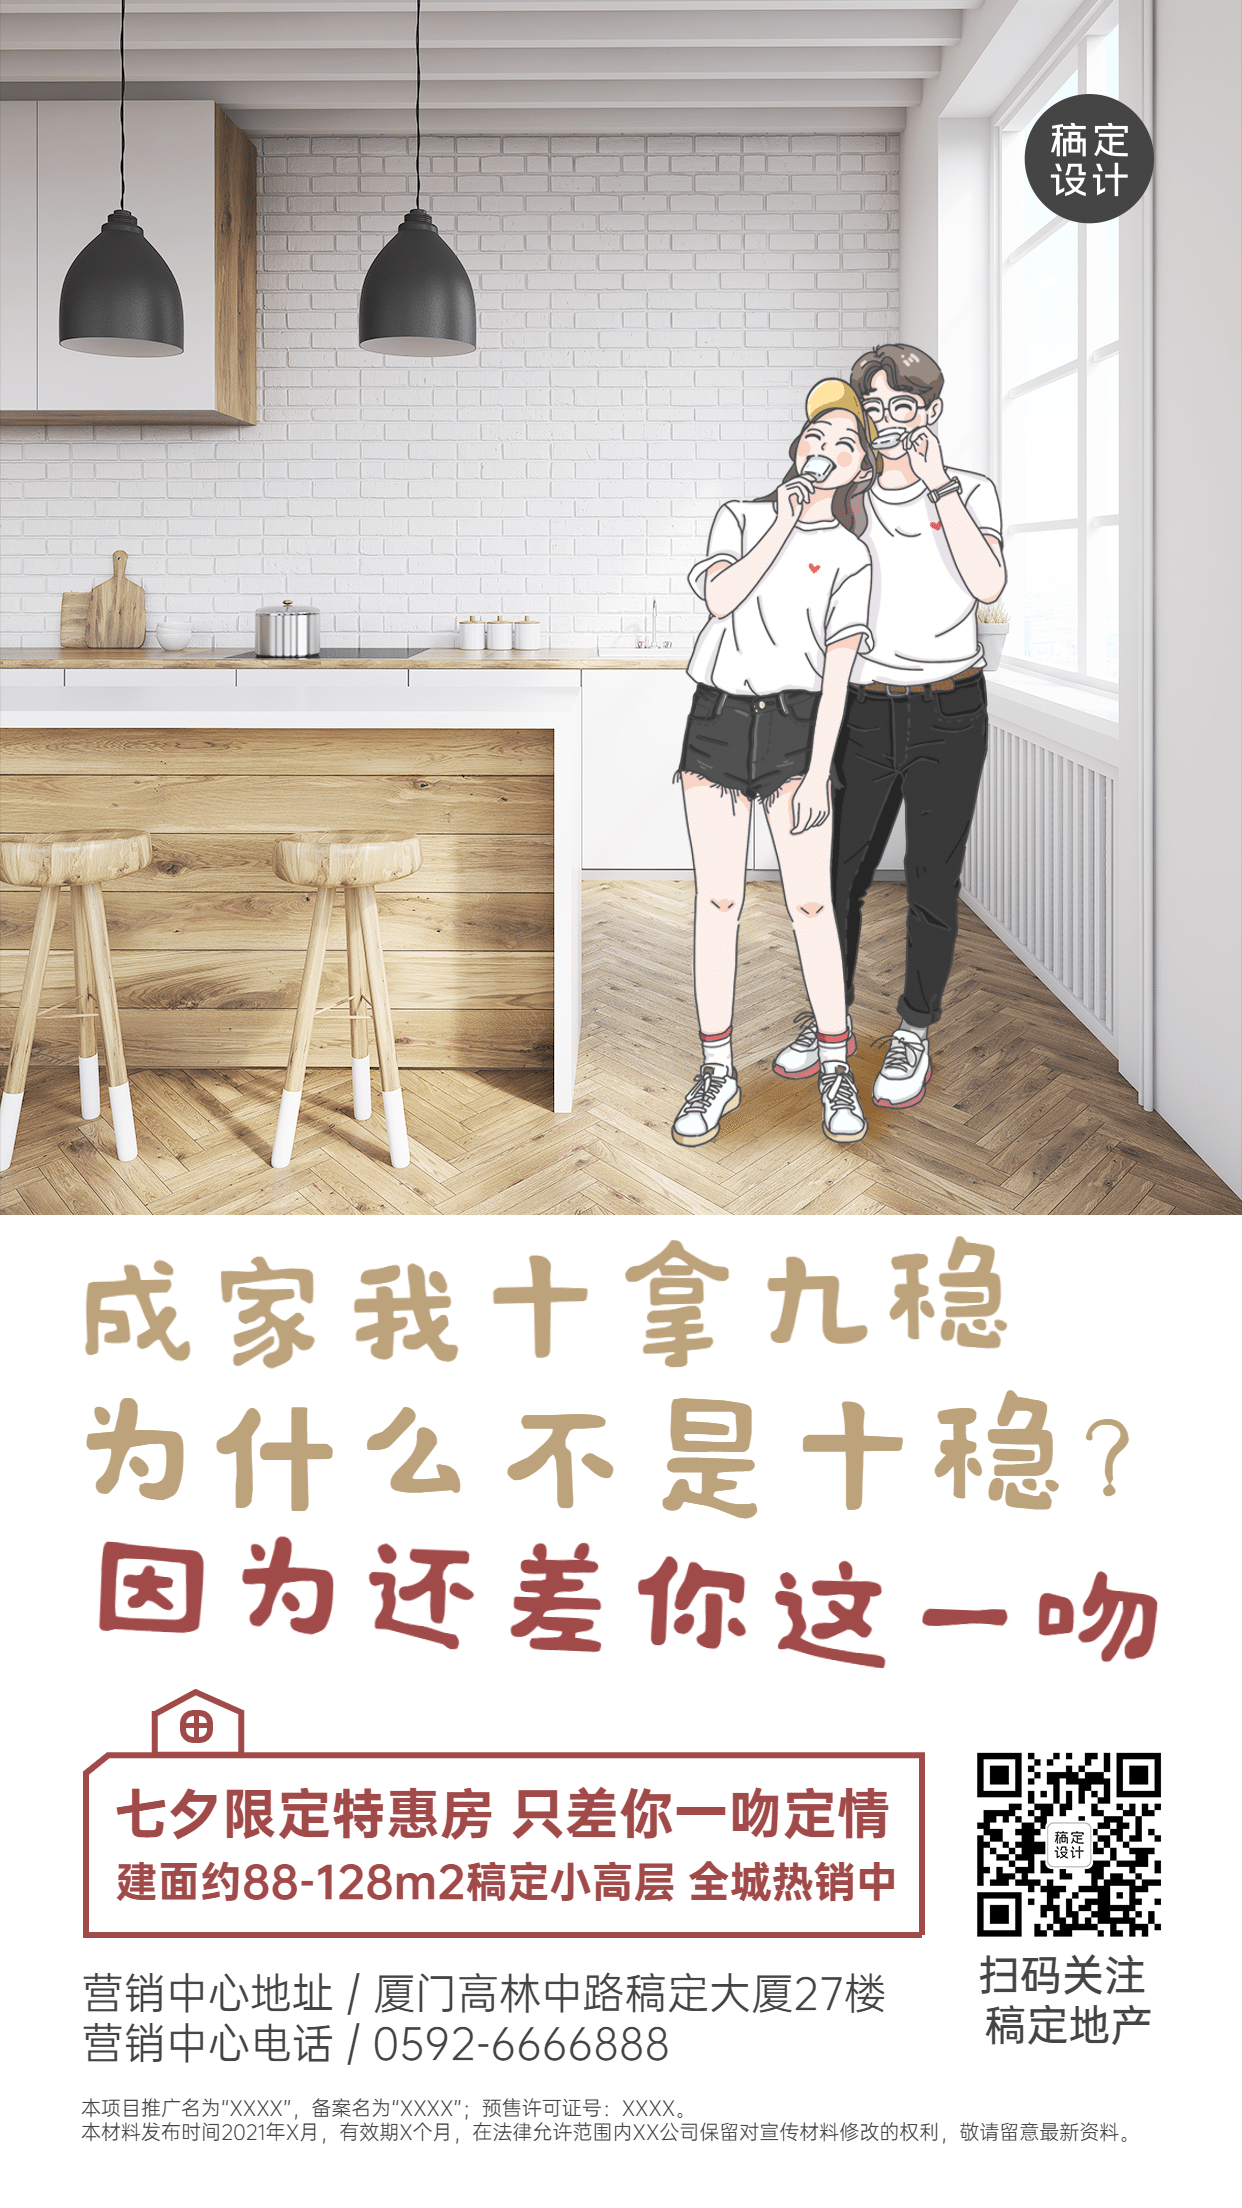 七夕房地产促销活动节日营销手绘海报预览效果